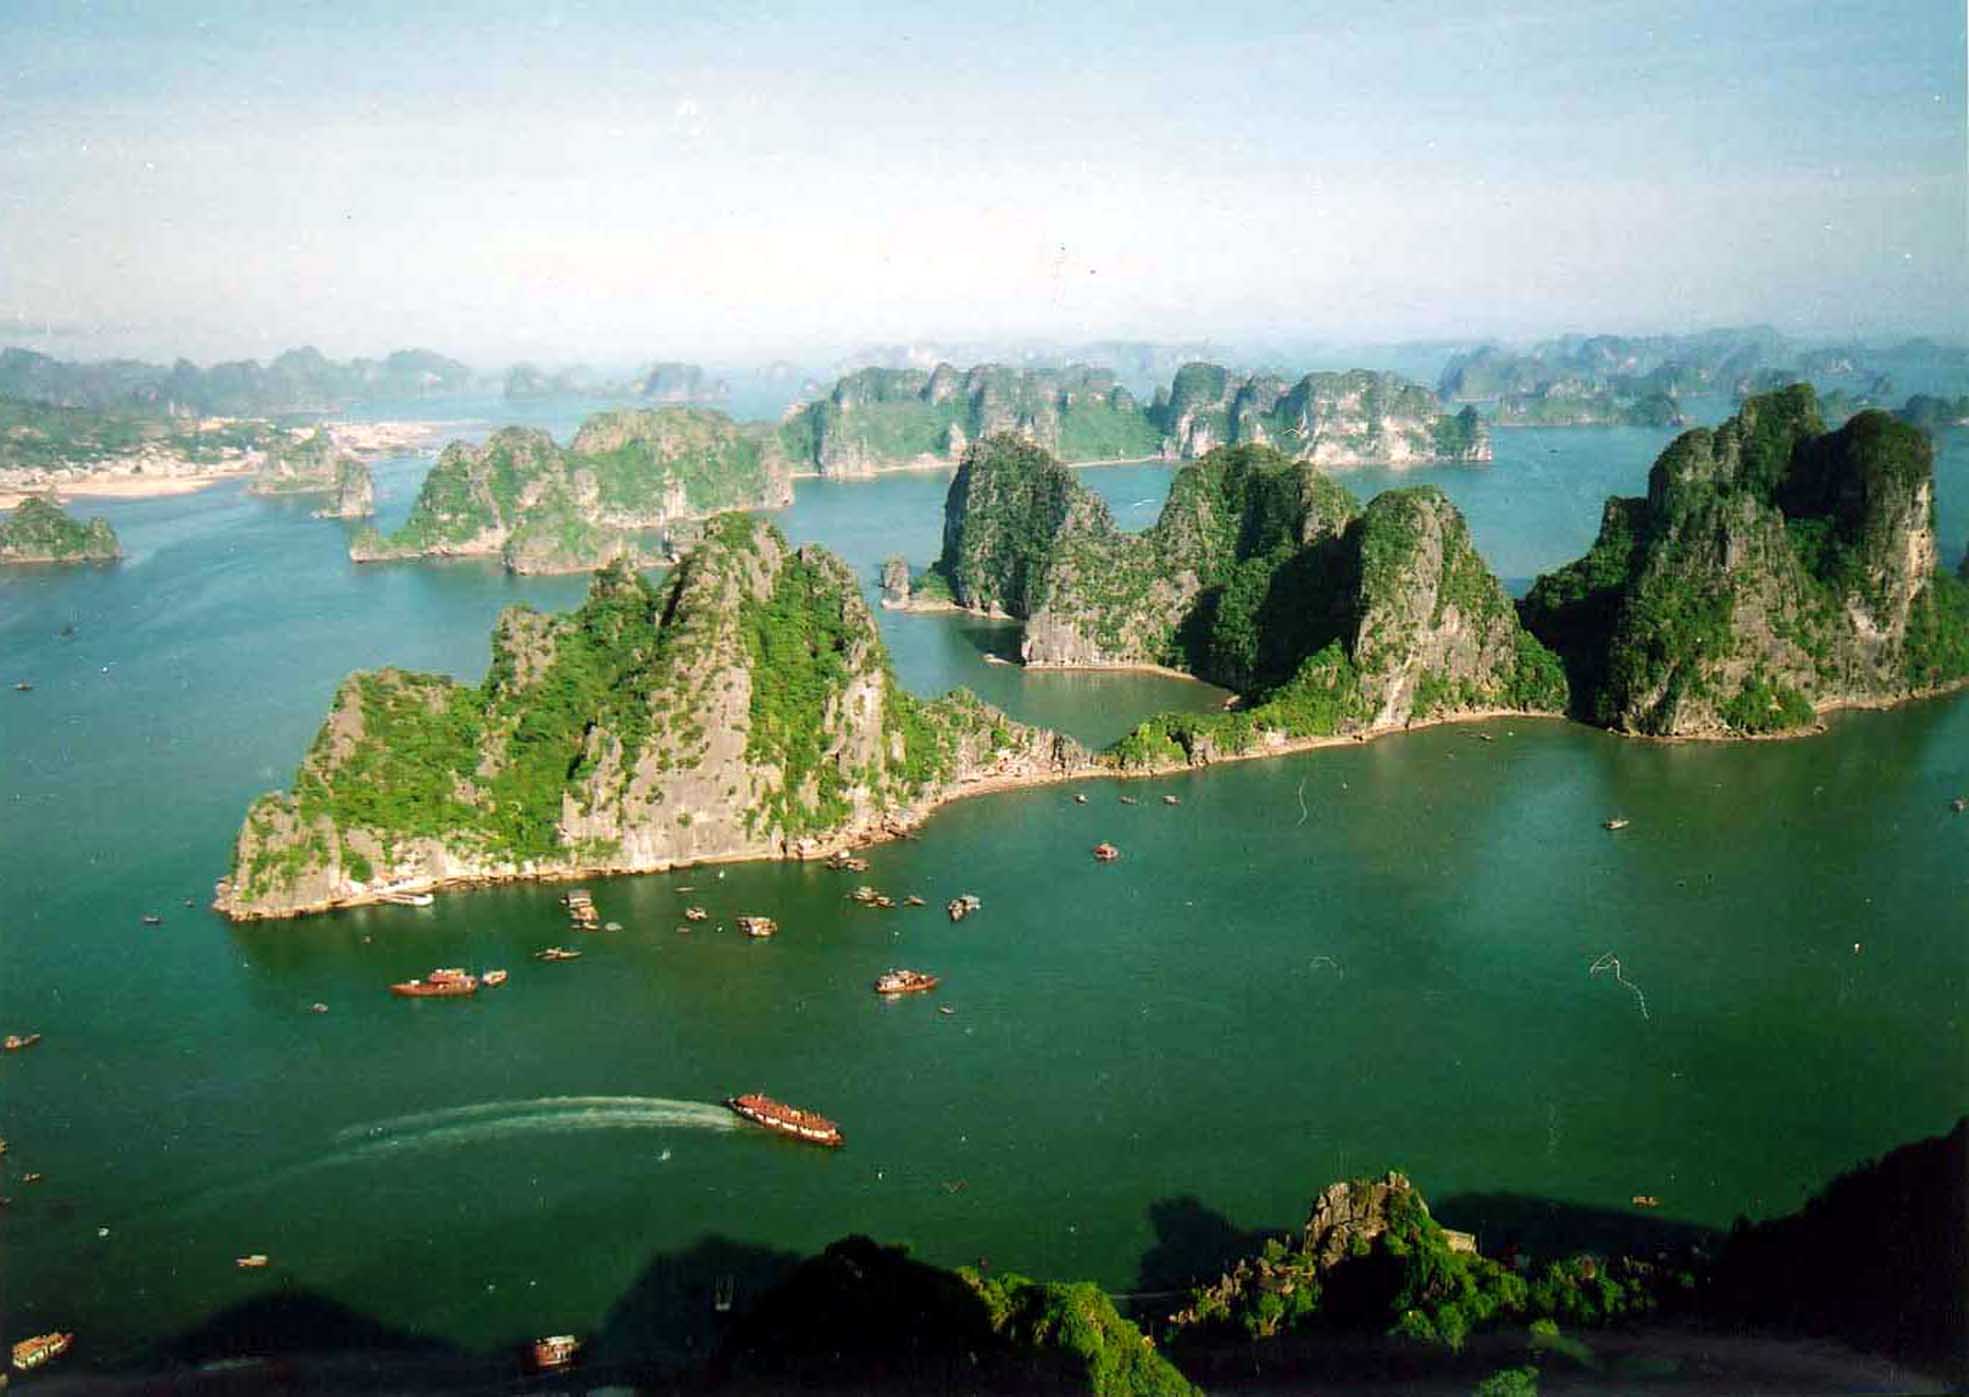 Quảng Ninh là một trong những điểm đến đẹp nhất của Việt Nam với những nét đẹp rực rỡ của biển, đảo và núi non. Tận hưởng cảm giác nghỉ ngơi trong không gian thoáng đãng và trong lành của các khu du lịch nổi tiếng như Hạ Long, bãi Cháy và Cái Rồng. Xem những bức ảnh thật đẹp của Quảng Ninh, bạn sẽ muốn đến đây ngay lập tức.